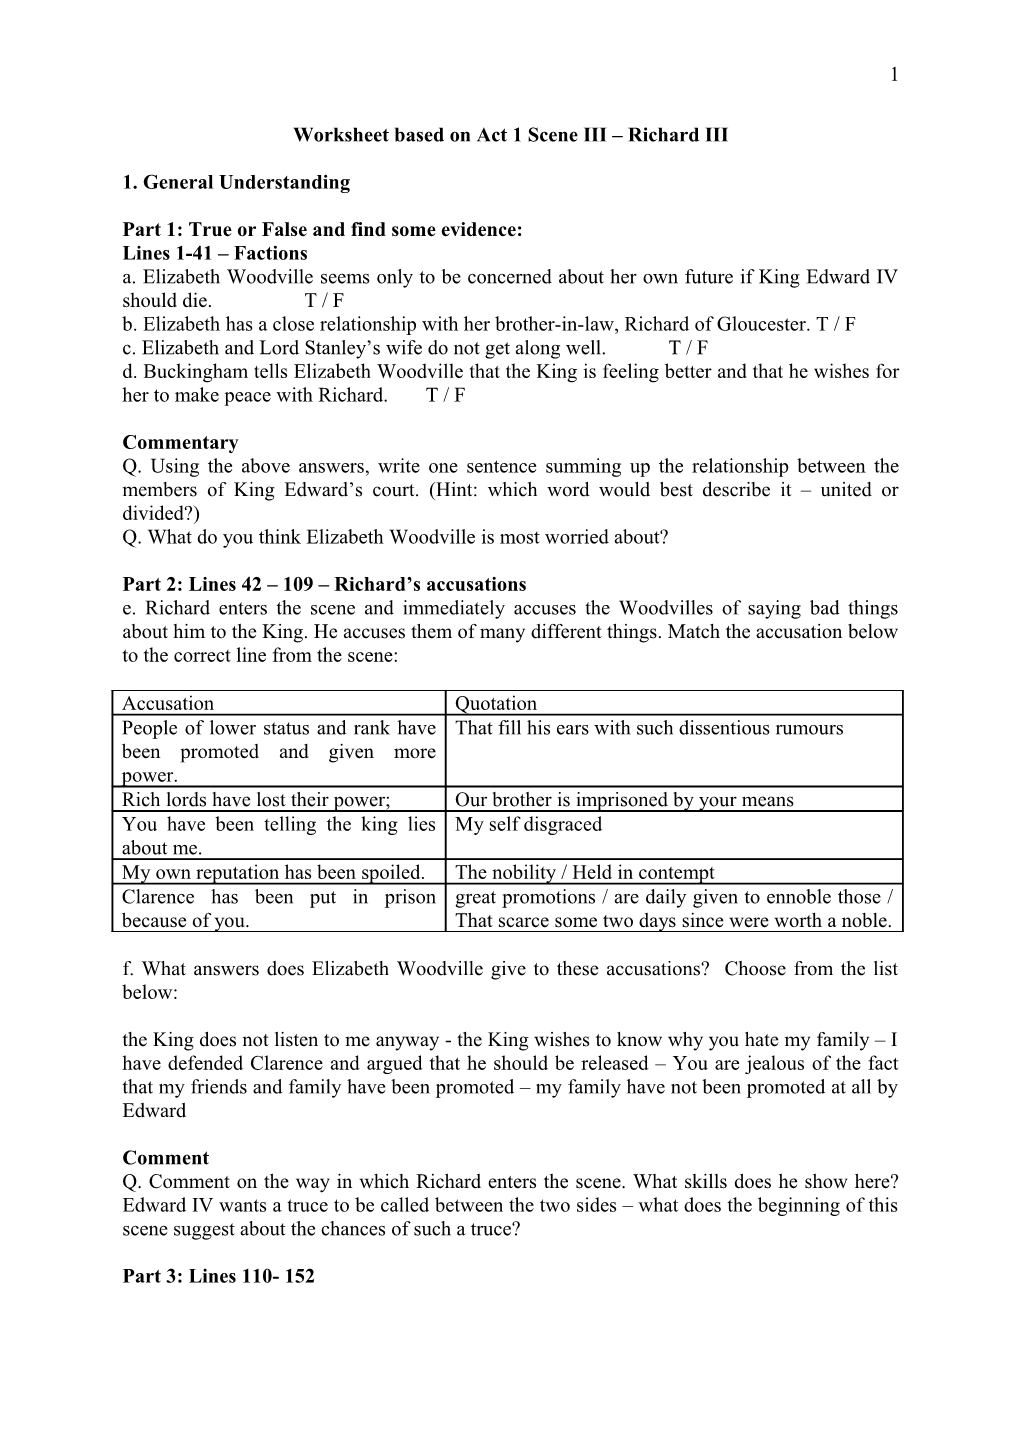 Worksheet Based on Act 1 Scene III Richard III